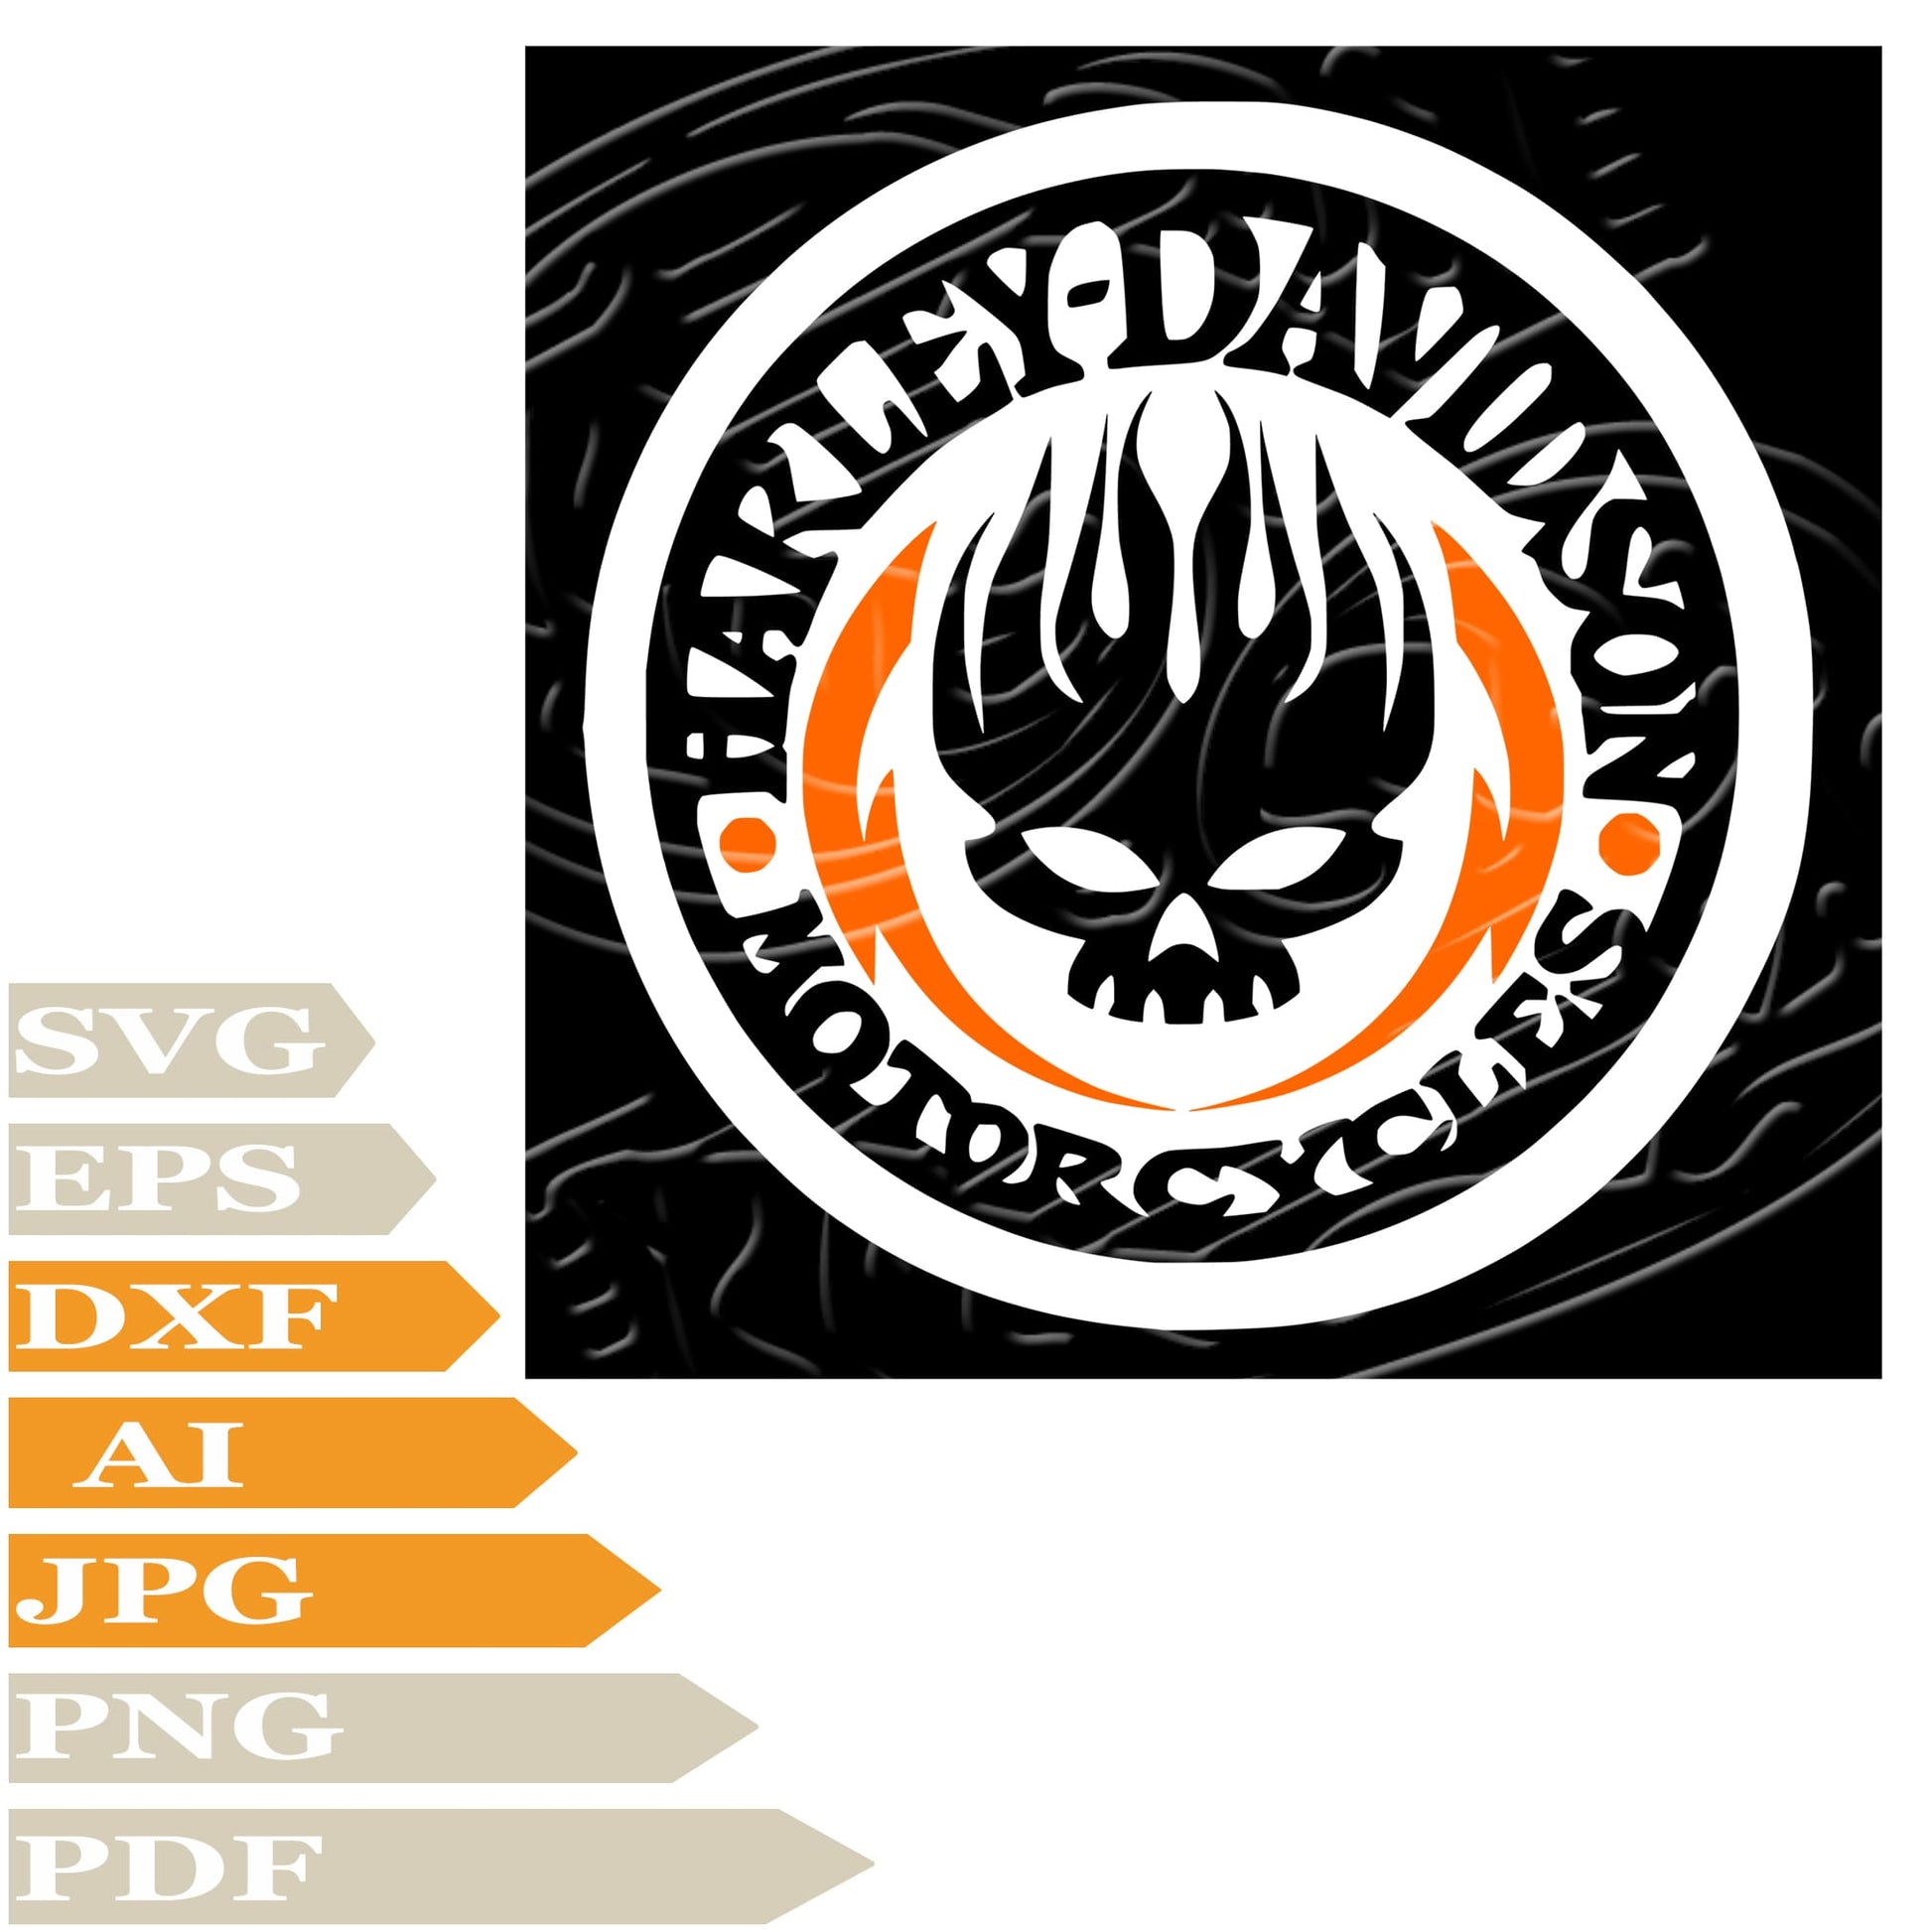 Harley Davidson Svg File, Skull Harley Davidson Svg Design, Skull Png, Harley Davidson Logo Vector Graphics, Skull Harley Davidson Svg For Tattoo, Harley Davidson Svg For Cricut